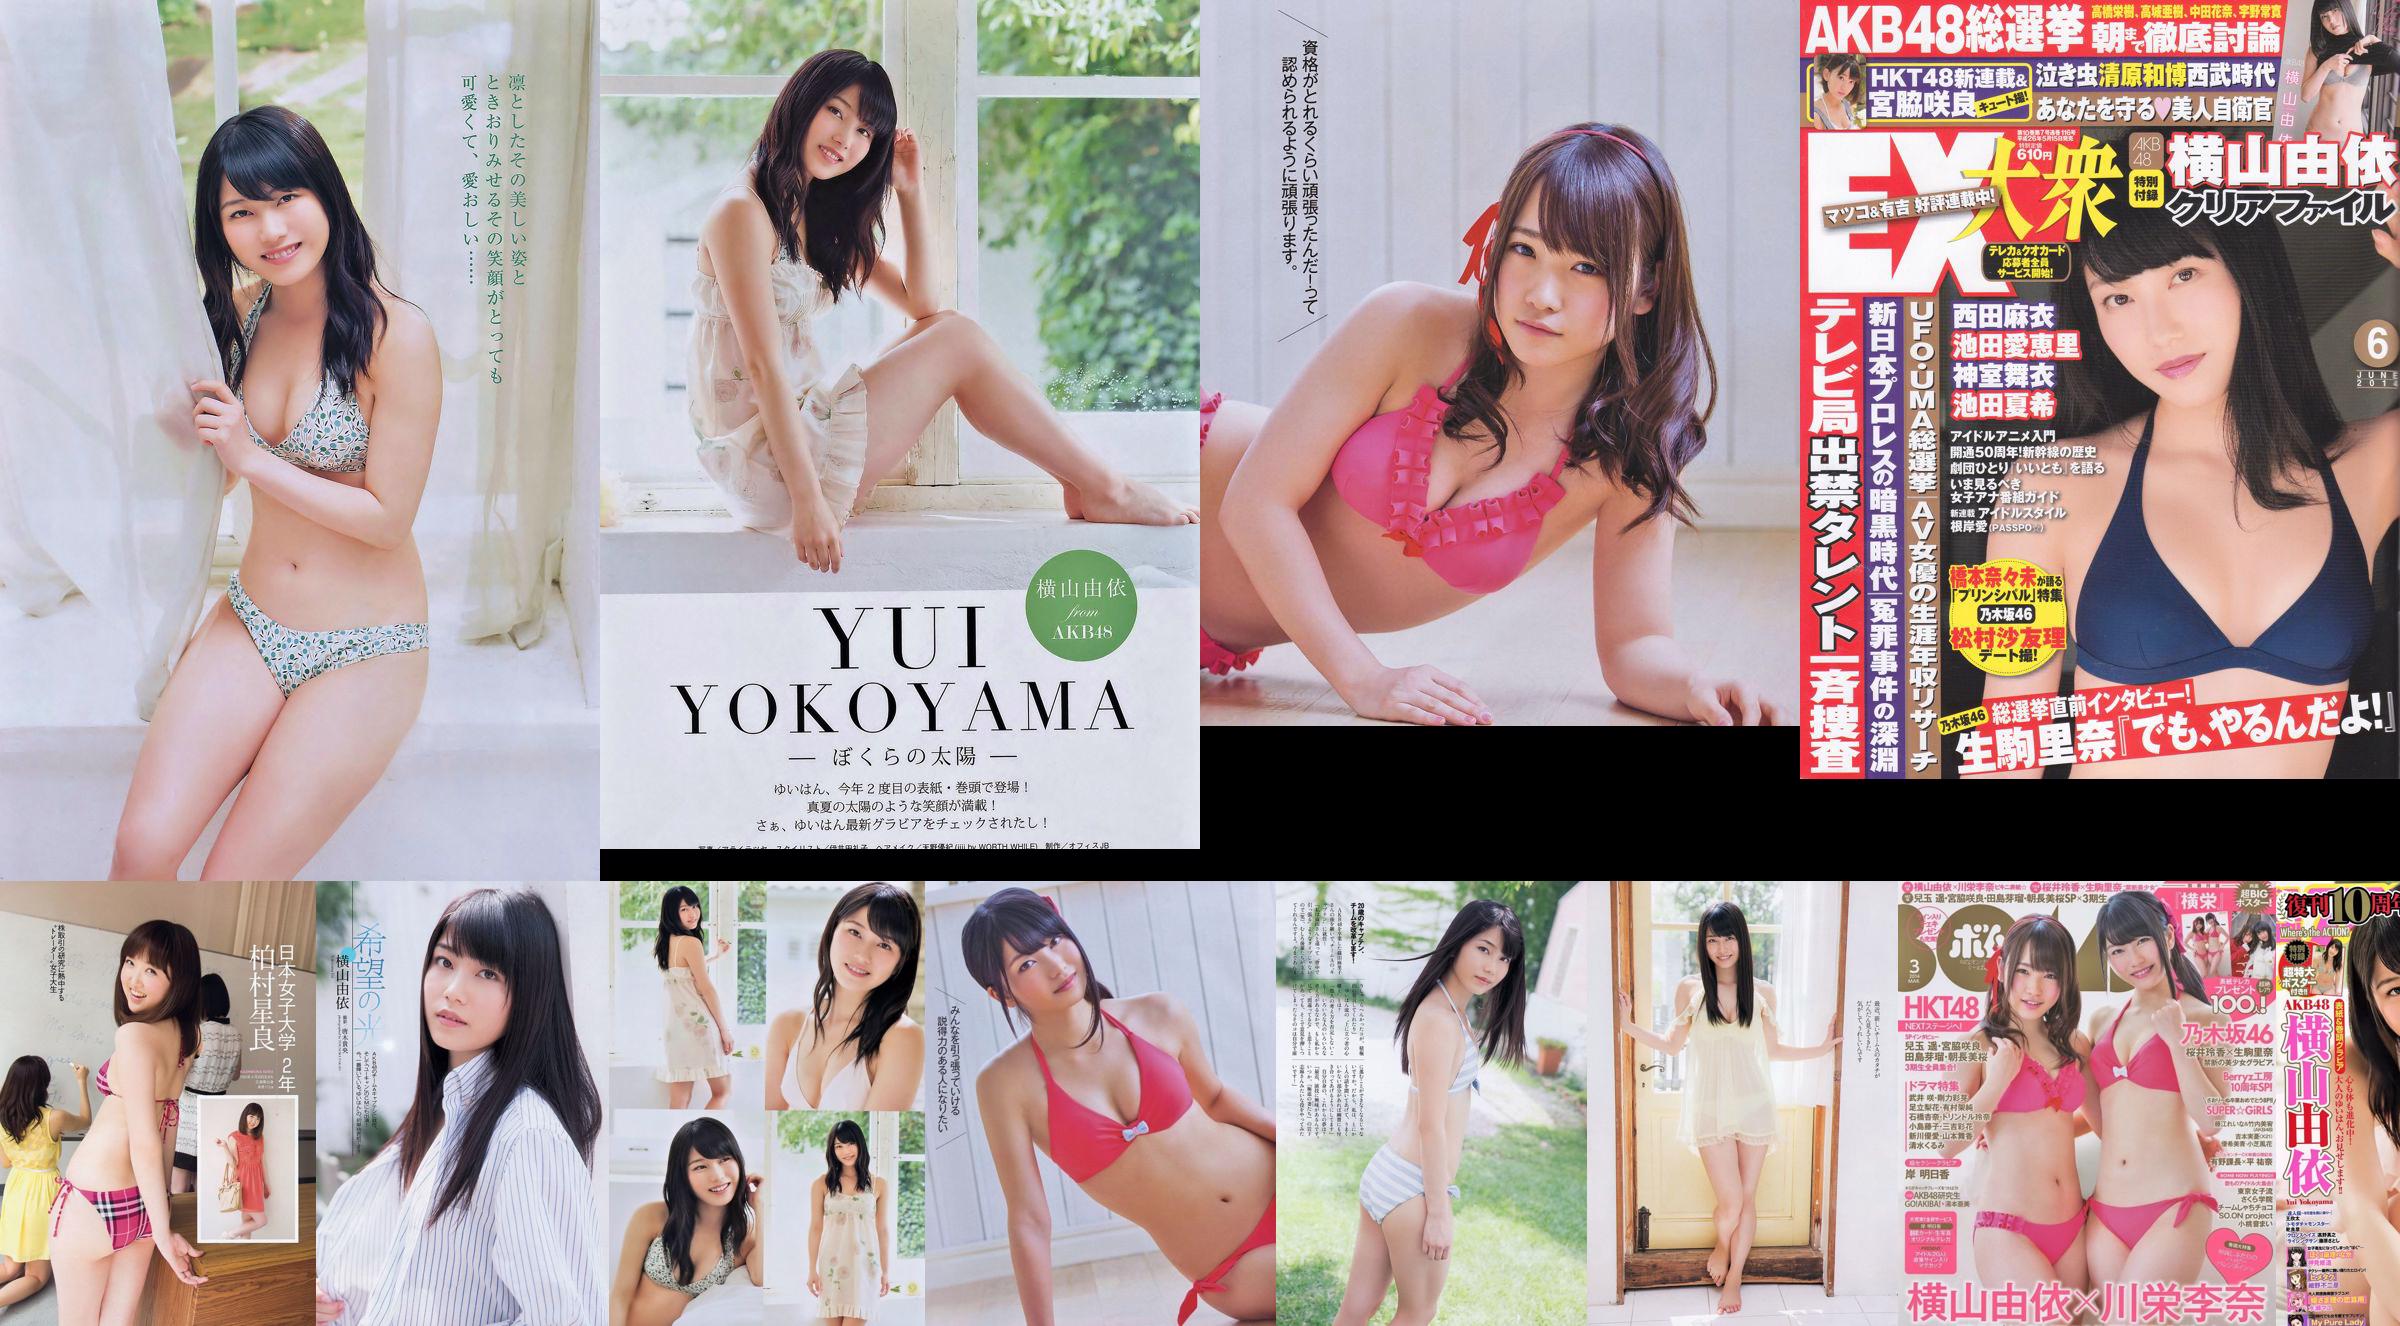 [EX Taishu] Yokoyama Yui, Miyawaki Sakura, Matsumura Sa Yuri 2014 Tạp chí ảnh số 06 No.6cf72e Trang 16